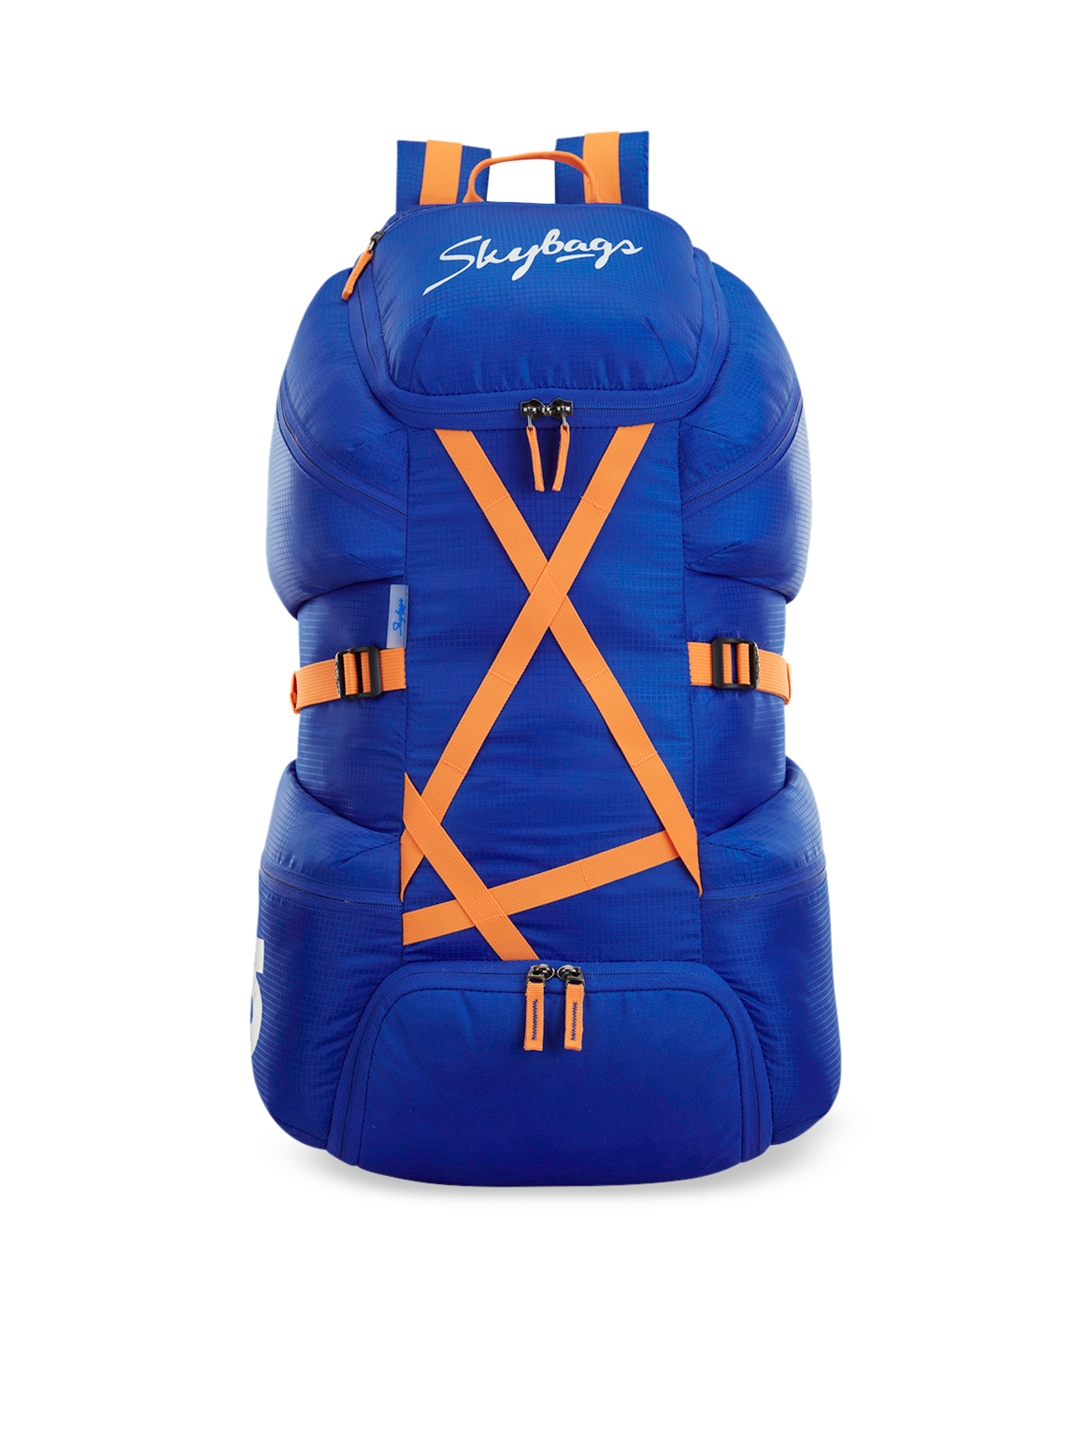 Skybags Unisex Blue   Orange Solid Flash Large 55 litre Rucksack